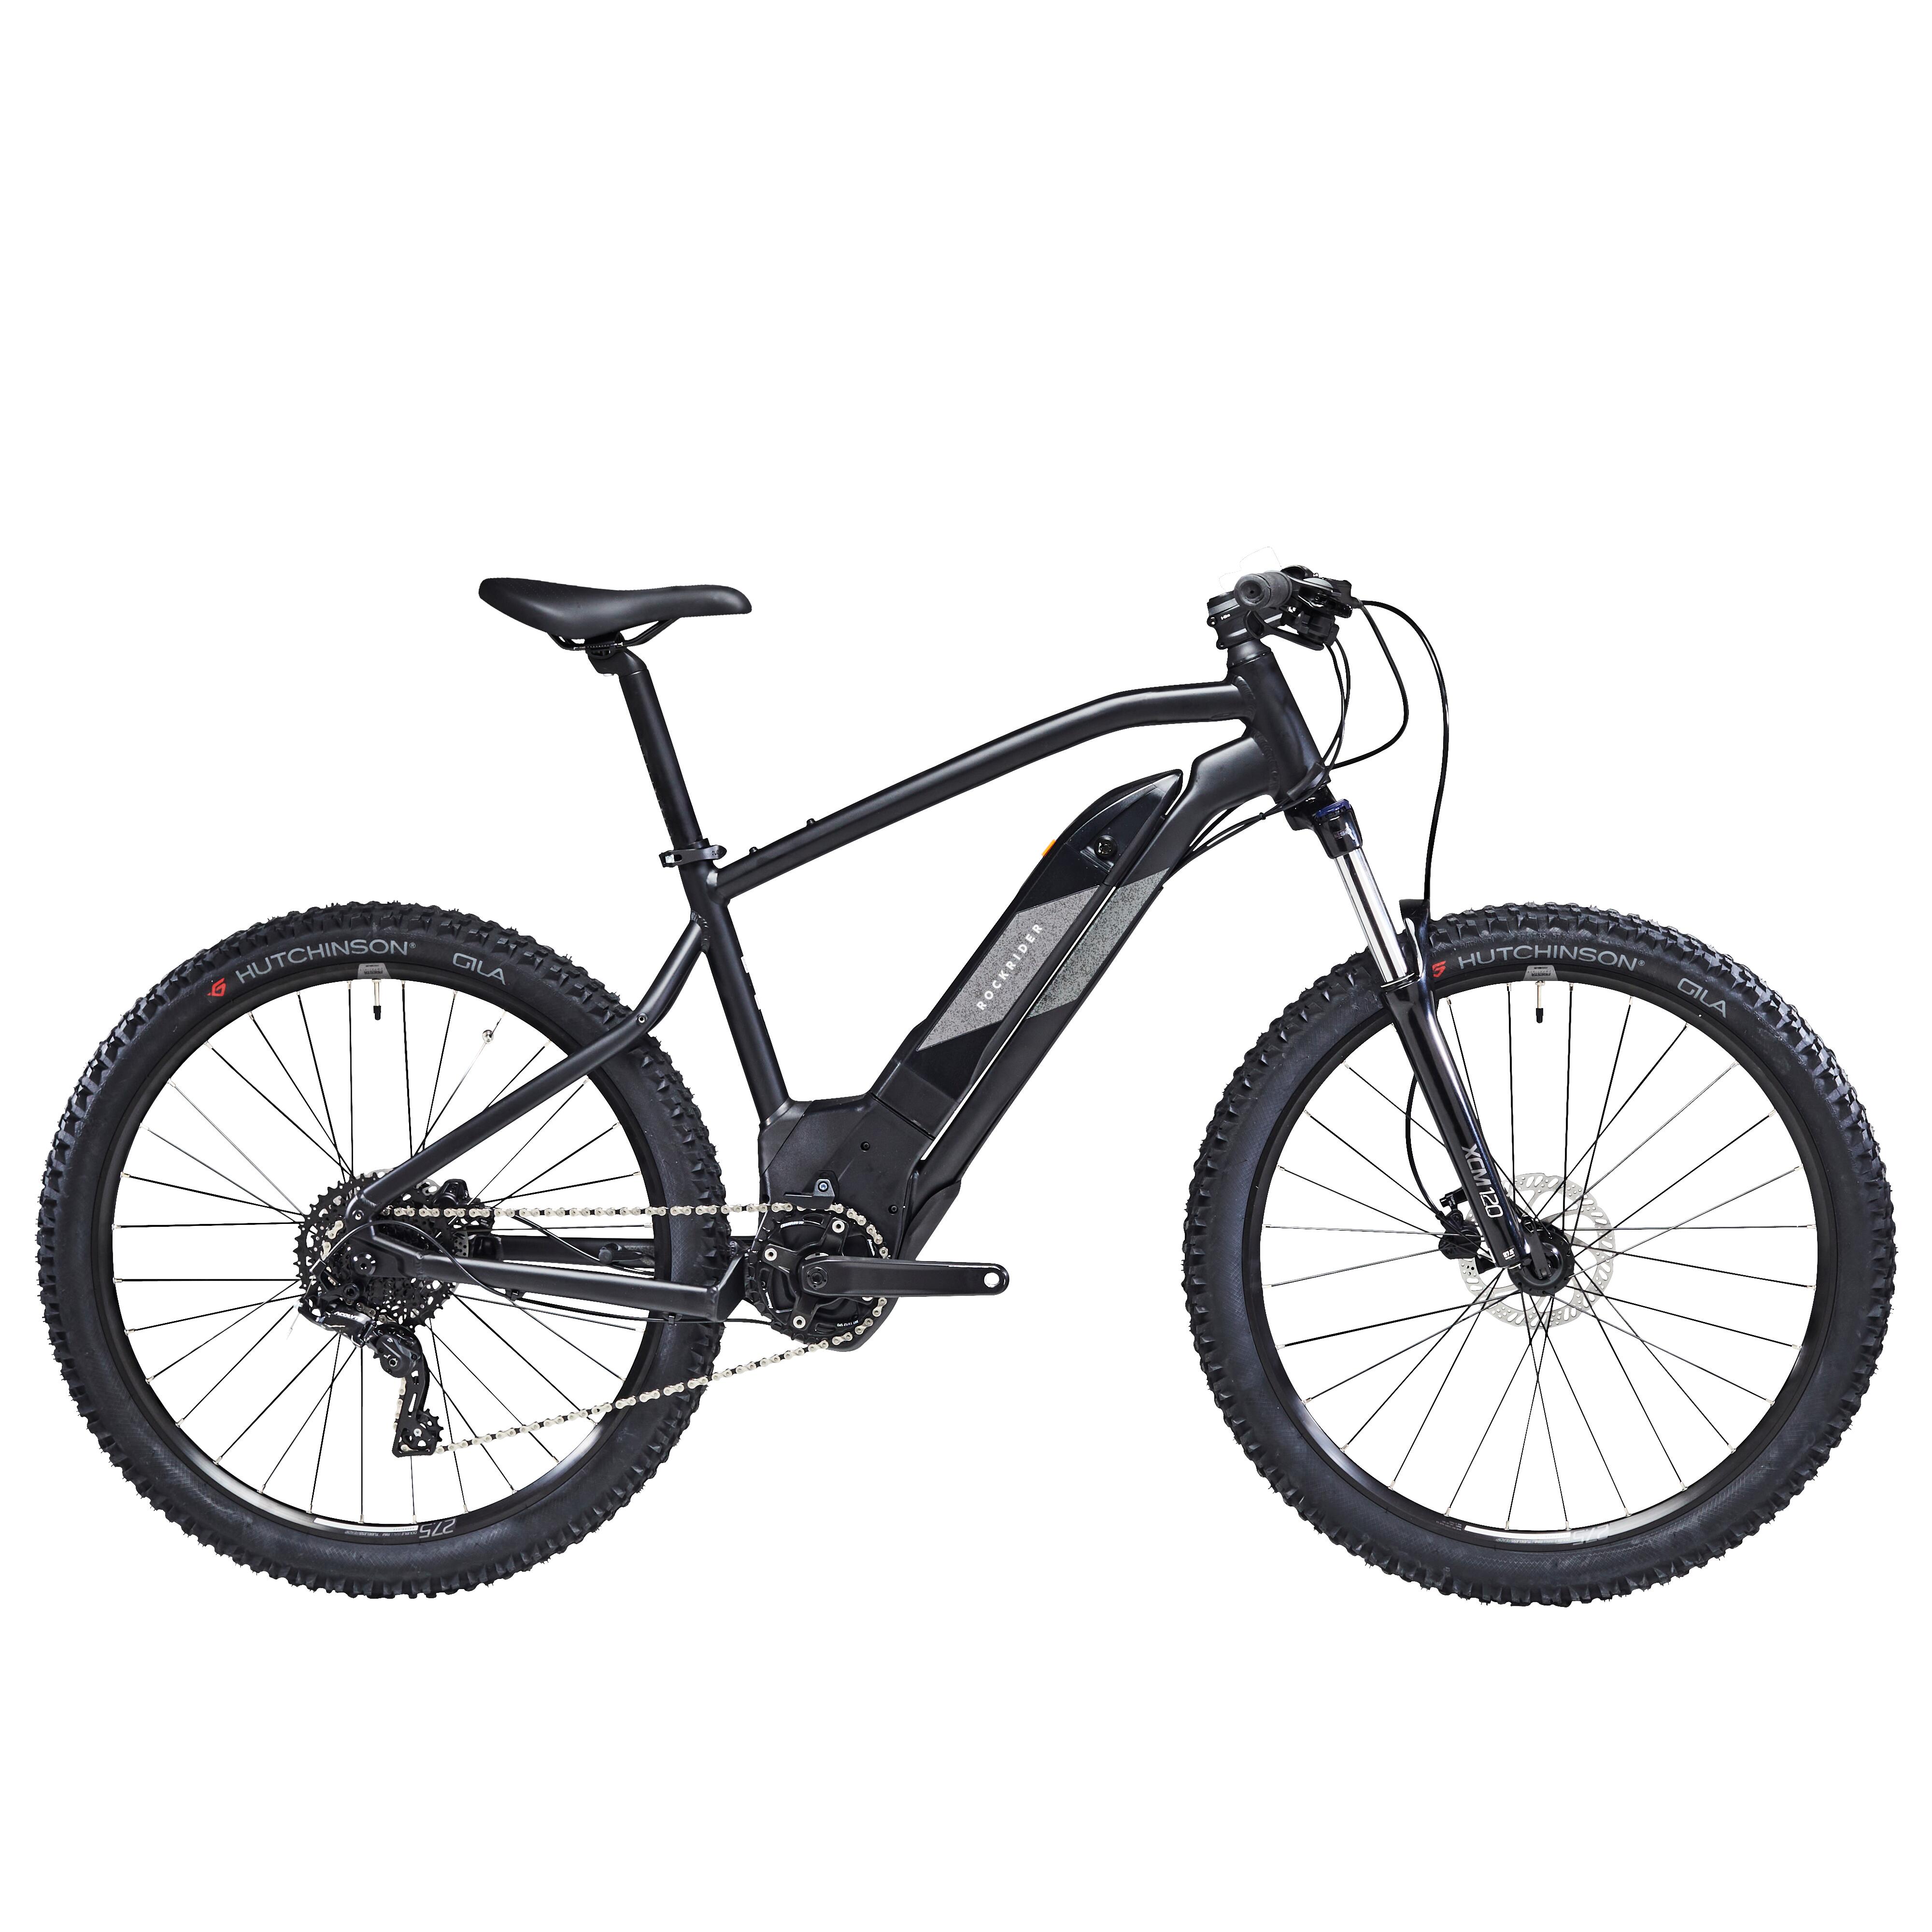 Bicicletă electrică semi-rigidă MTB E-ST500 27,5″ Negru 275"- imagine 2022